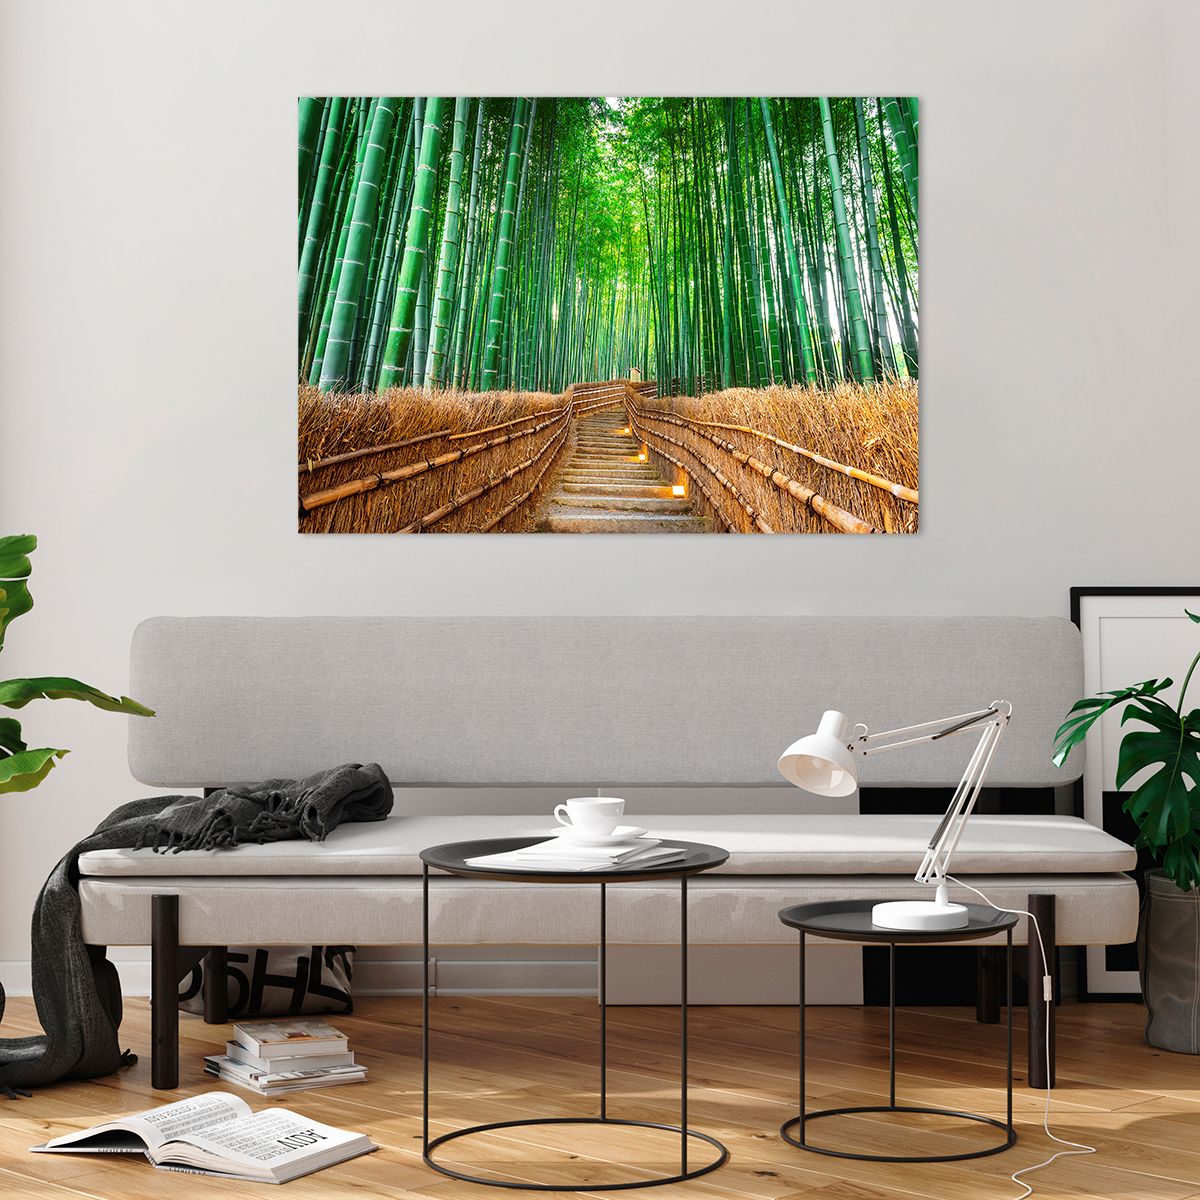 Bild på glas Bambu, Bild på glas Bambuskog, Bild på glas Natur, Bild på glas Landskap, Bild på glas Asien